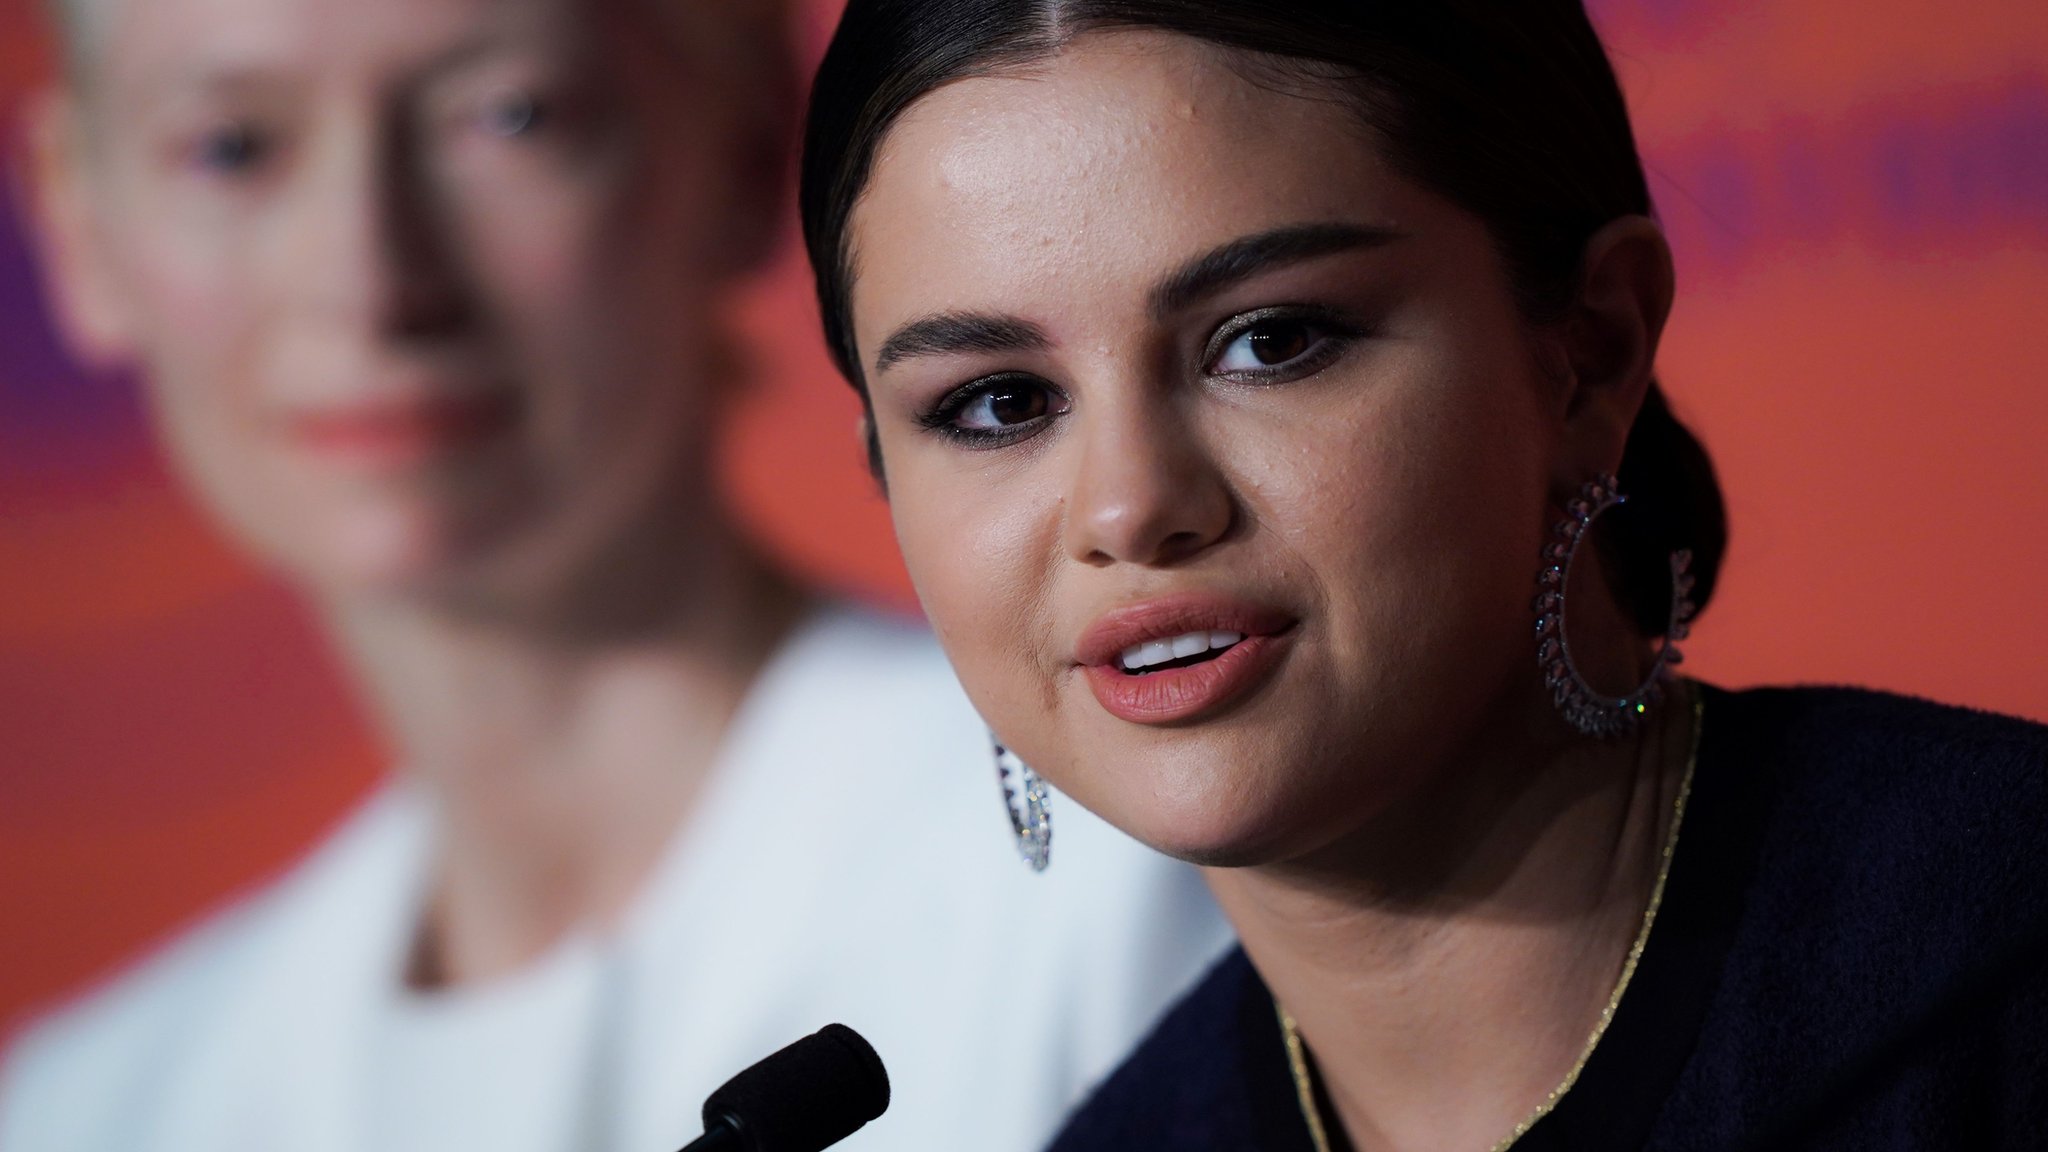 Selena Gomez among stars modelling designer Pudsey Bear ears - BBC News